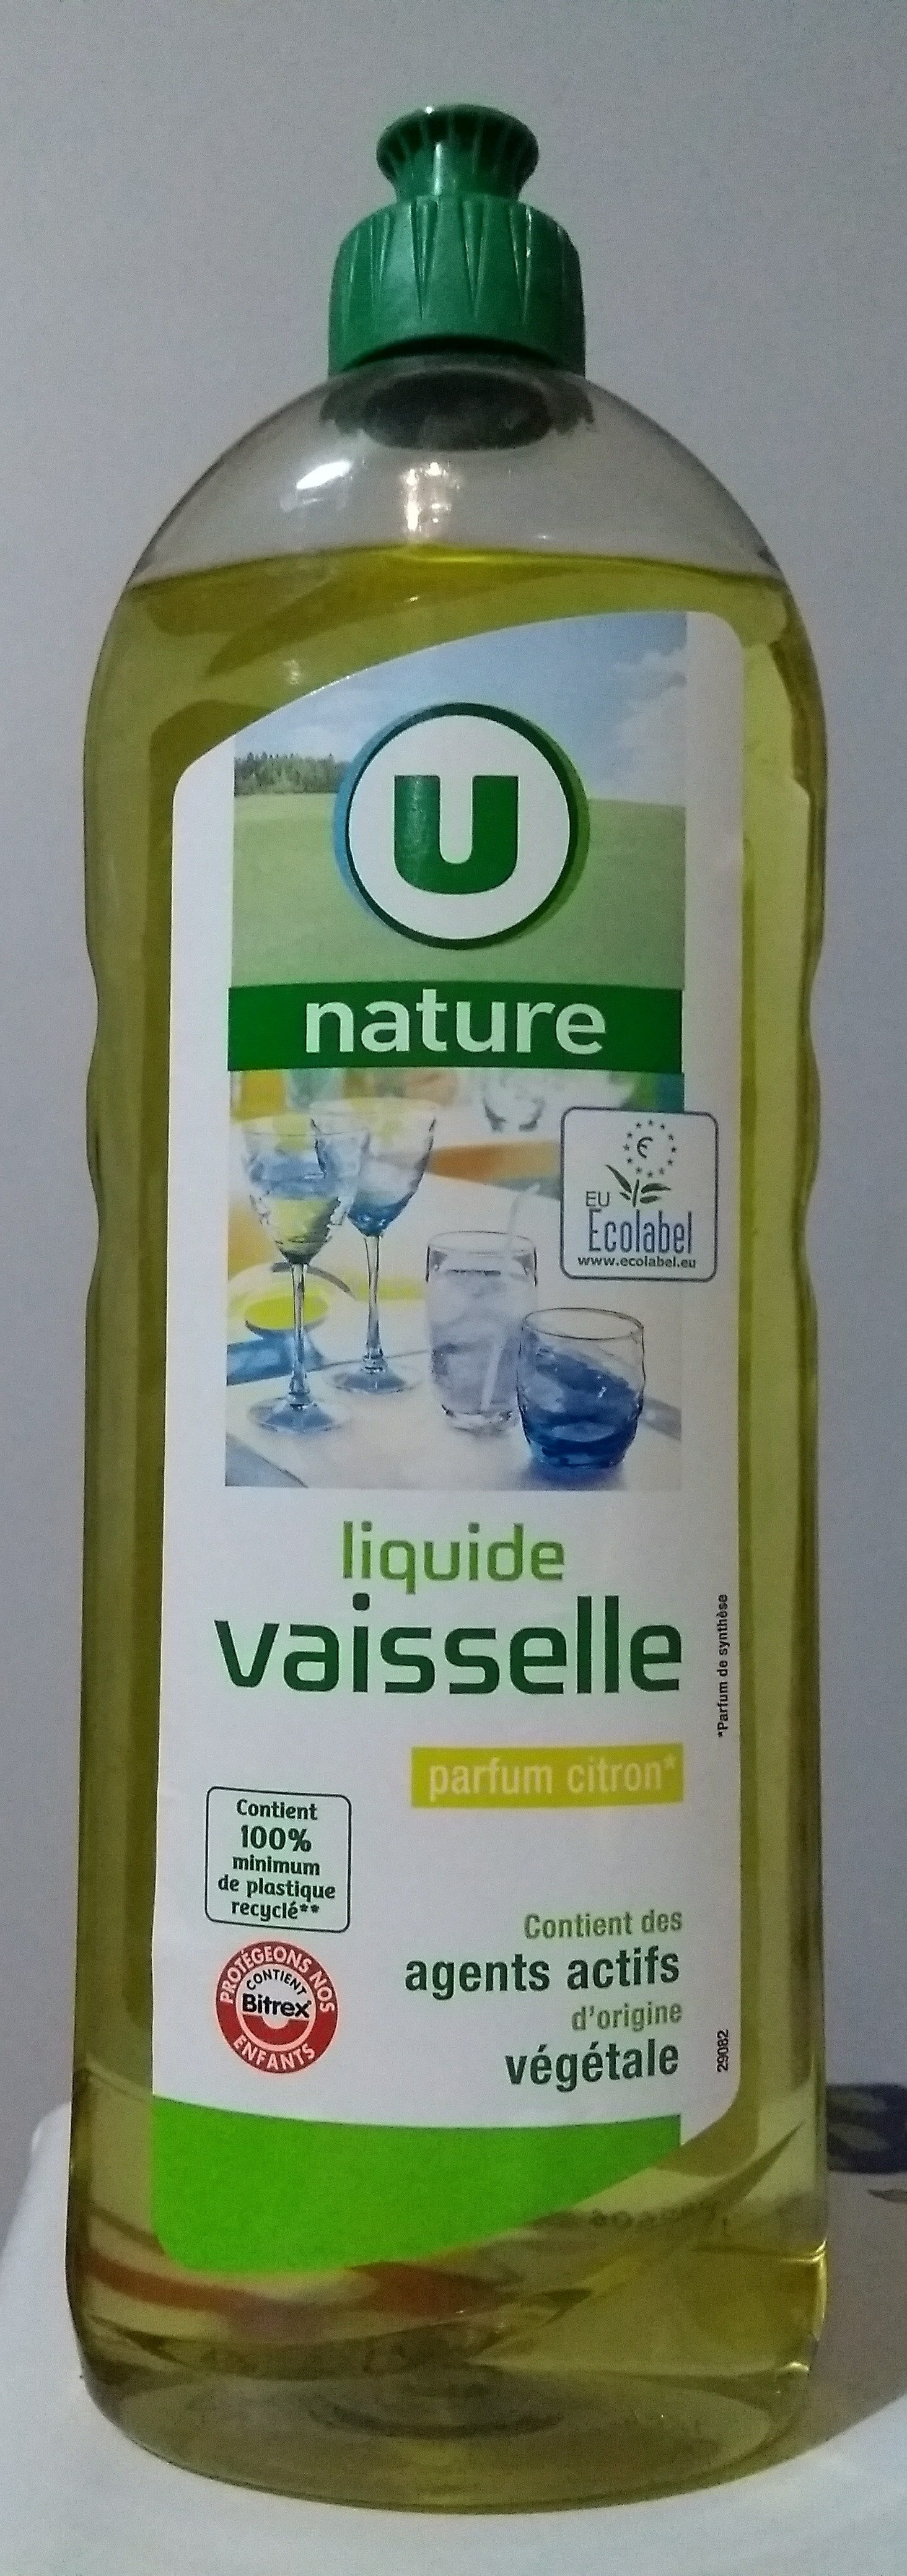 liquide vaisselle parfum citron - Product - fr